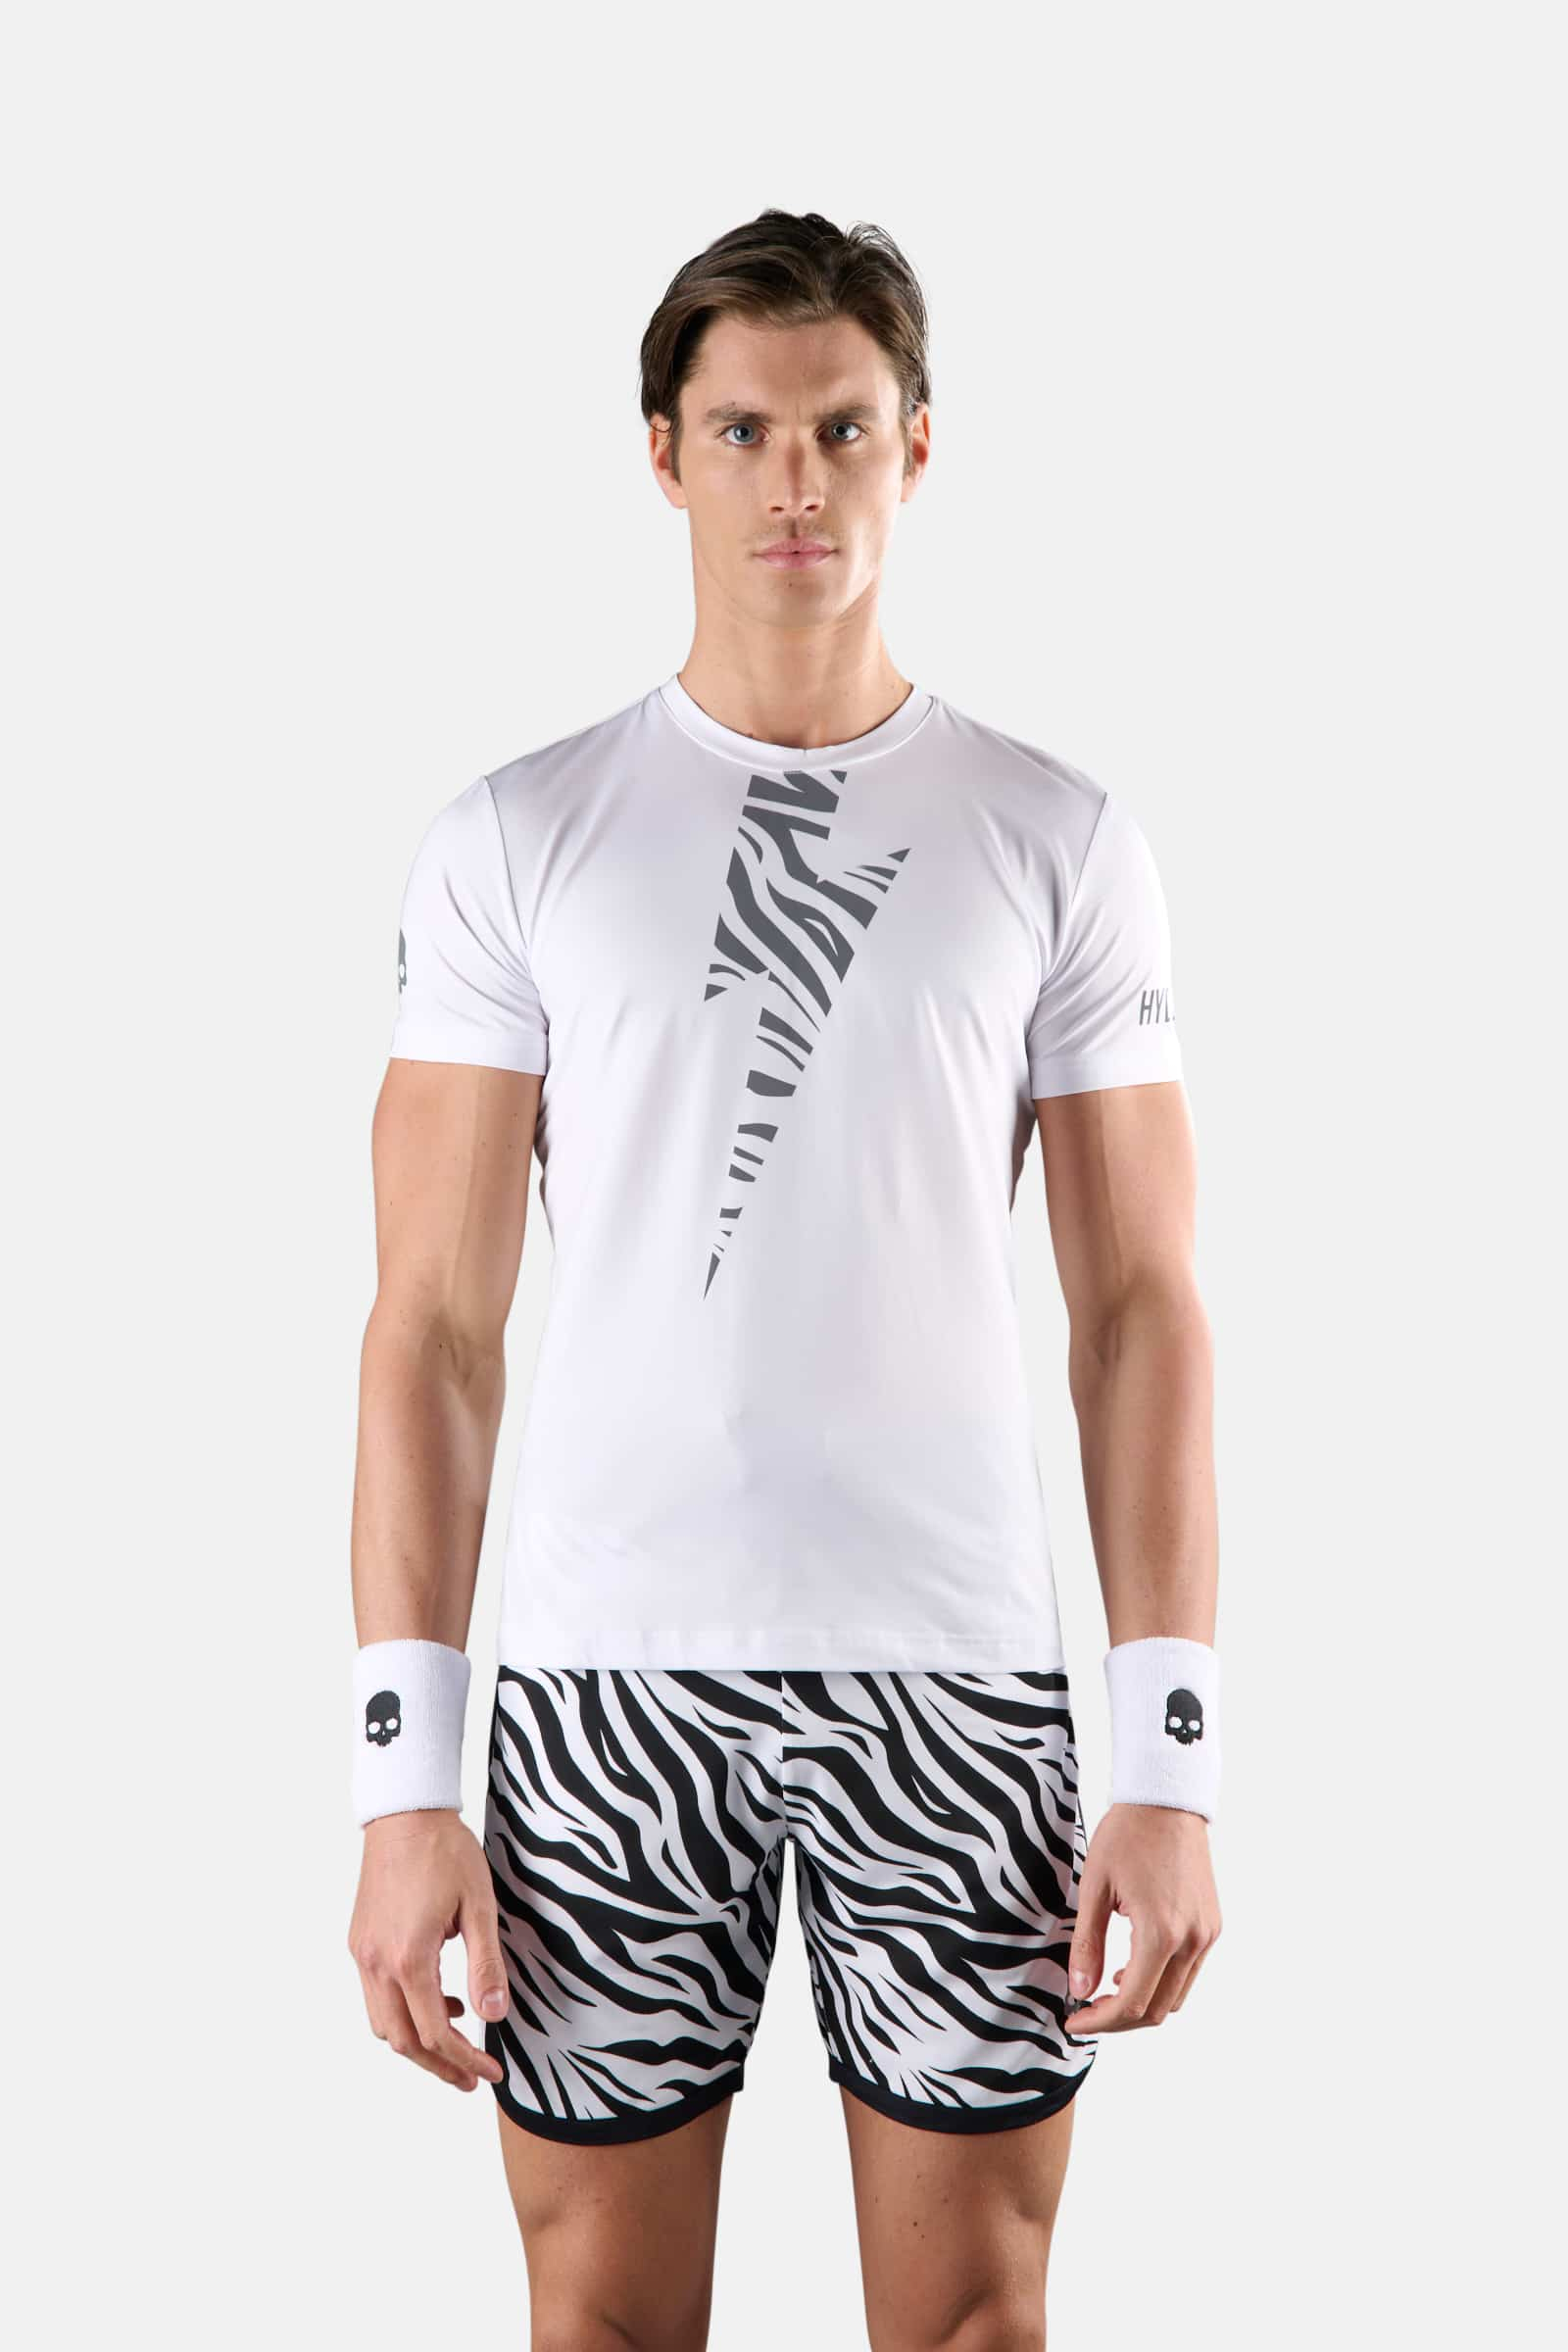 TIGER TECH TEE - WHITE,SILVER - Hydrogen - Luxury Sportwear